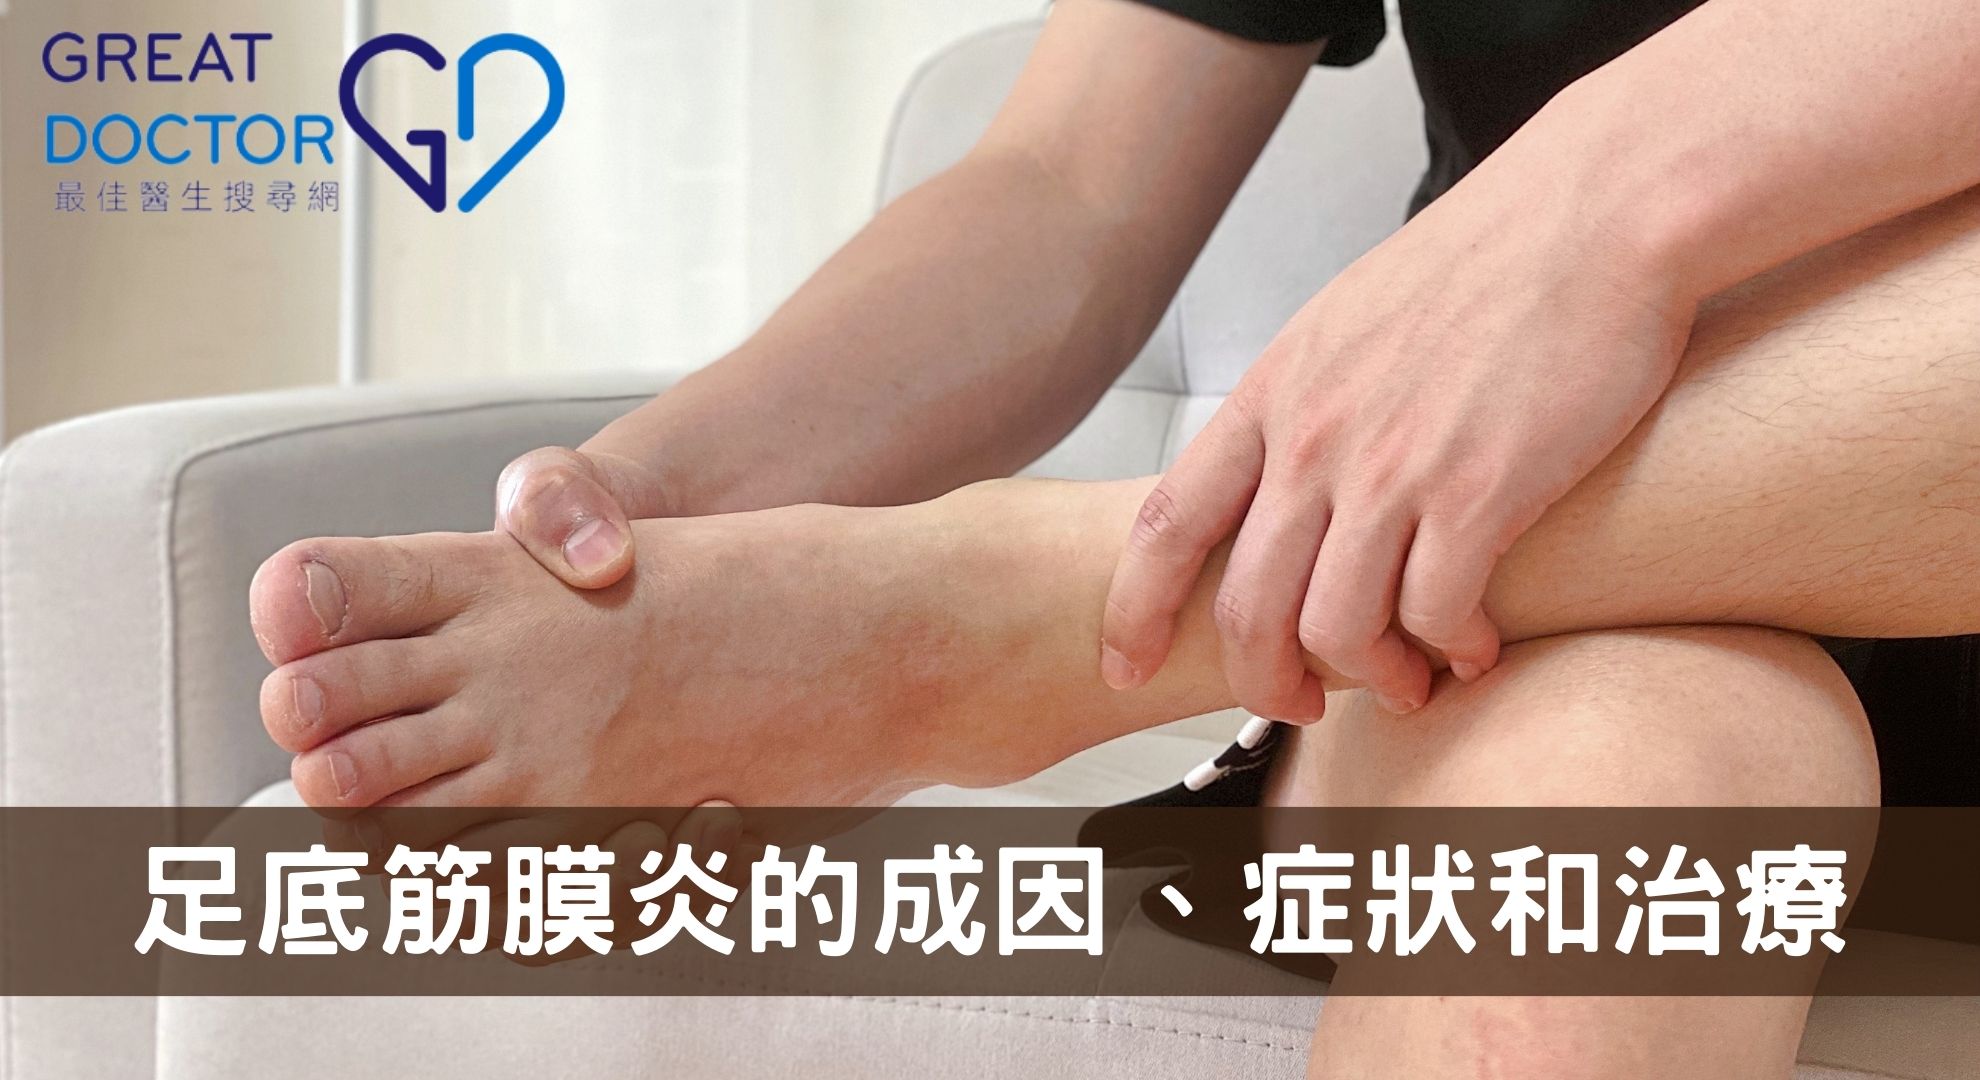 【足底筋膜炎】脊醫一文告訴你足底筋膜炎的成因、症狀和治療